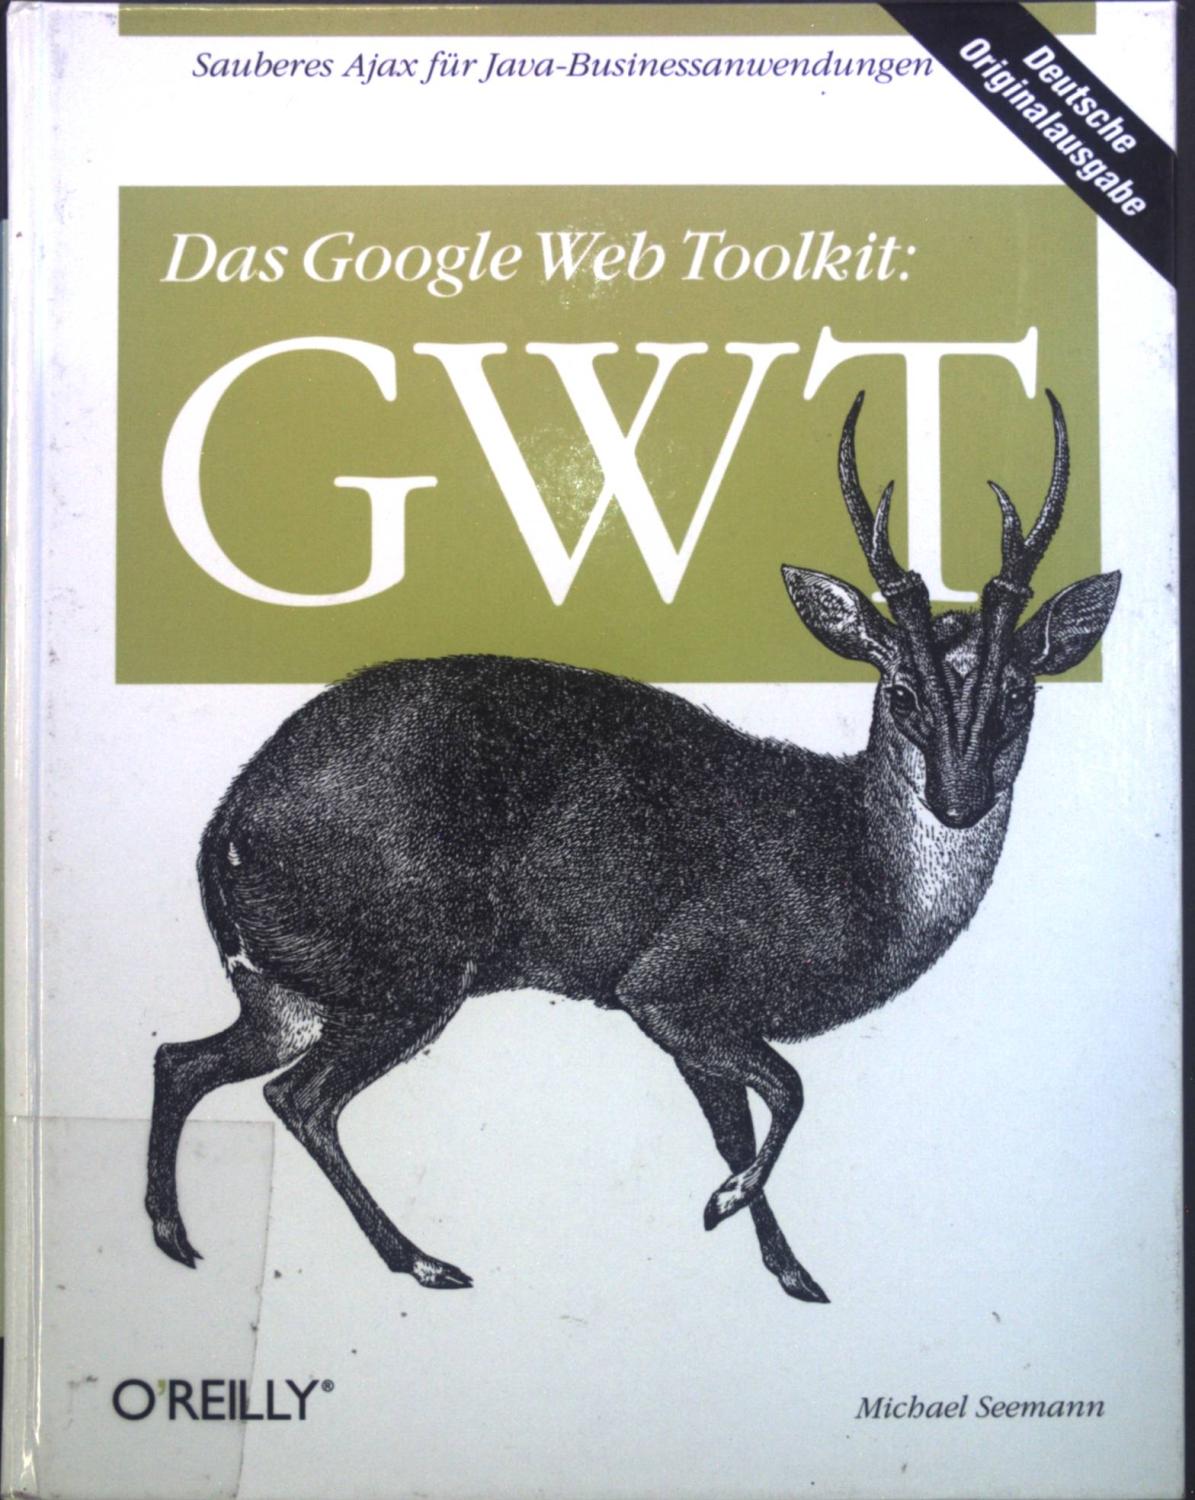 Das Google Web Toolkit: GWT : [sauberes Ajax für Java-Businessanwendungen]. - Seemann, Michael